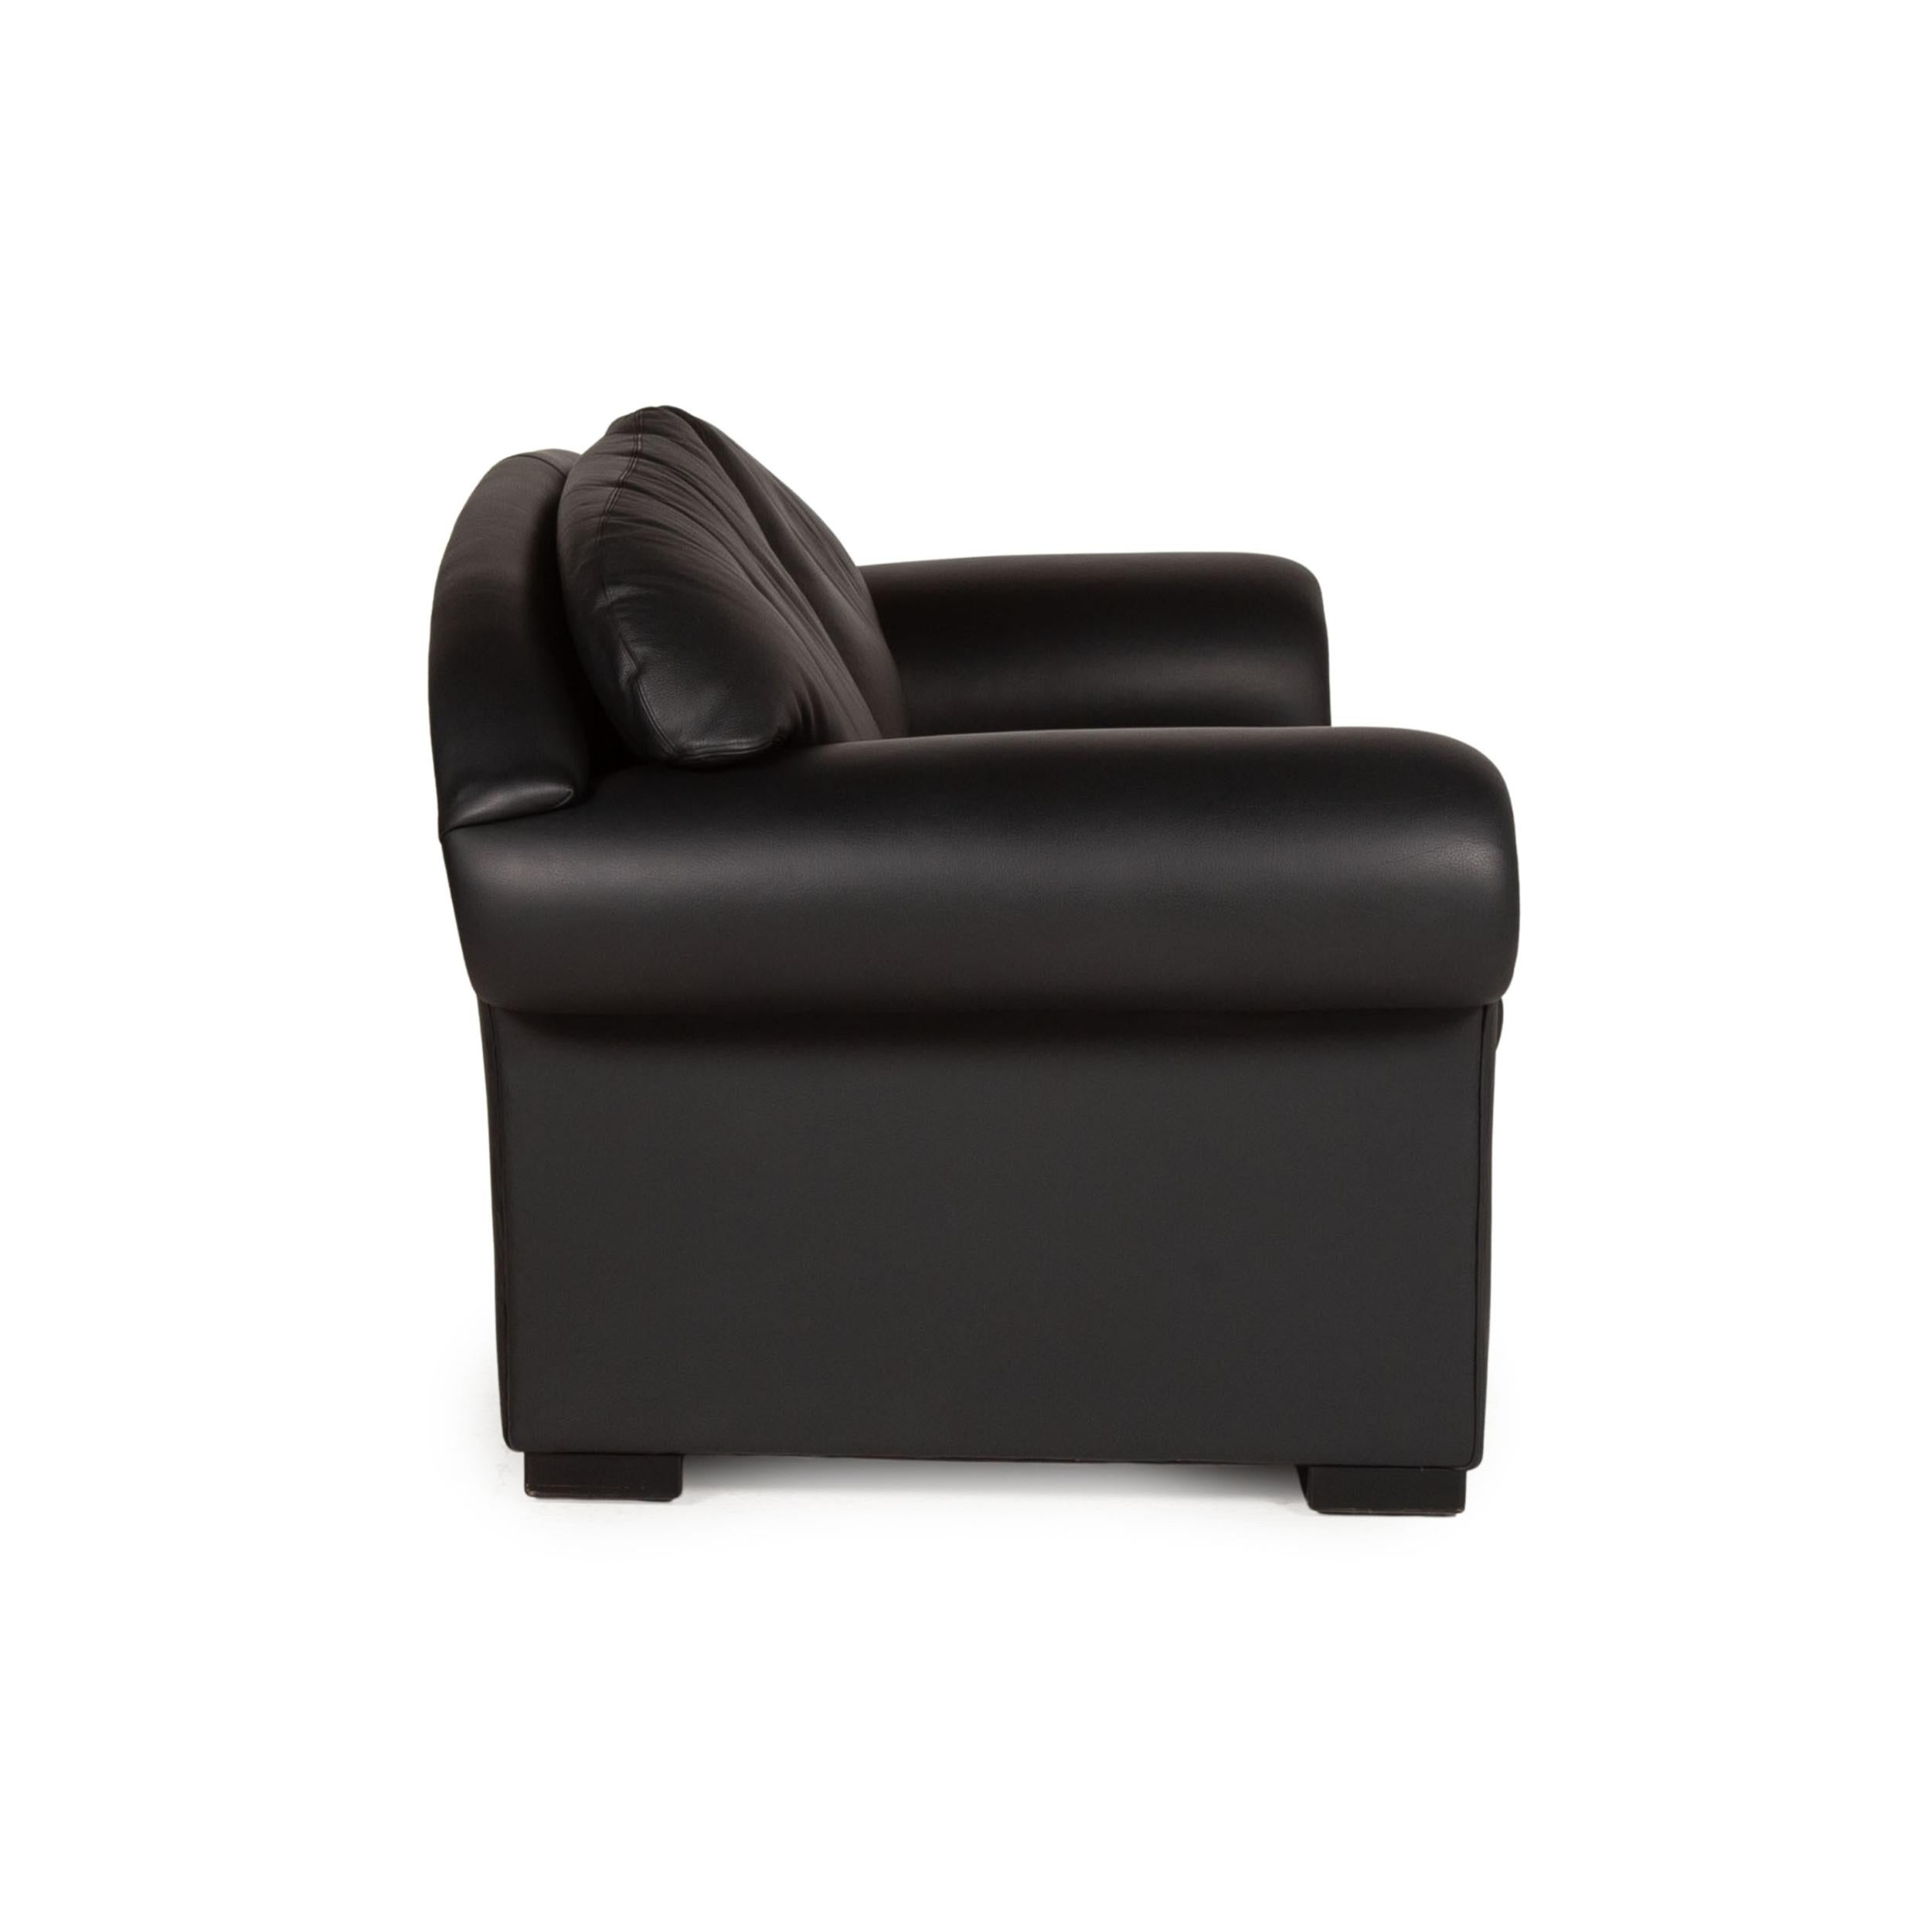 Bielefelder Werkstätten Leather Sofa Black Two-Seater Couch 2